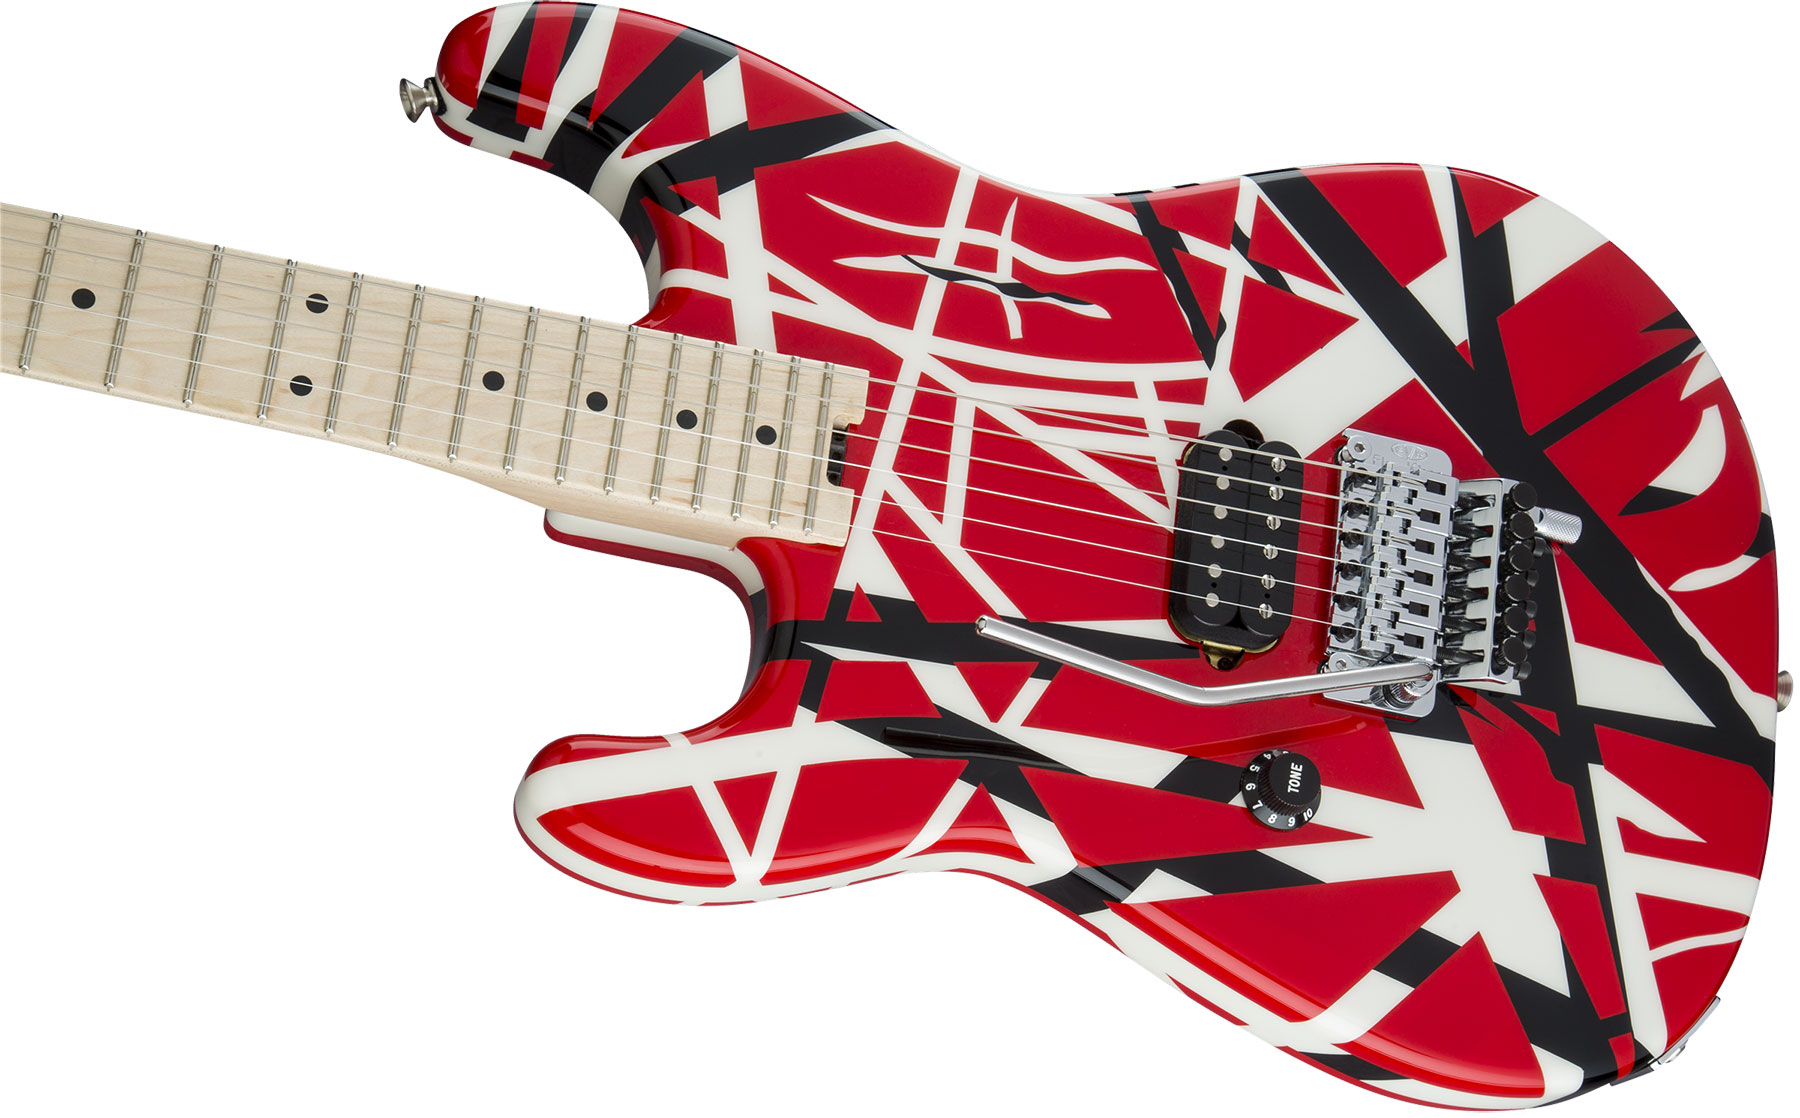 Evh Striped Series Lh Gaucher Signature H Fr Mn - Red Black White Stripes - Guitarra electrica para zurdos - Variation 2